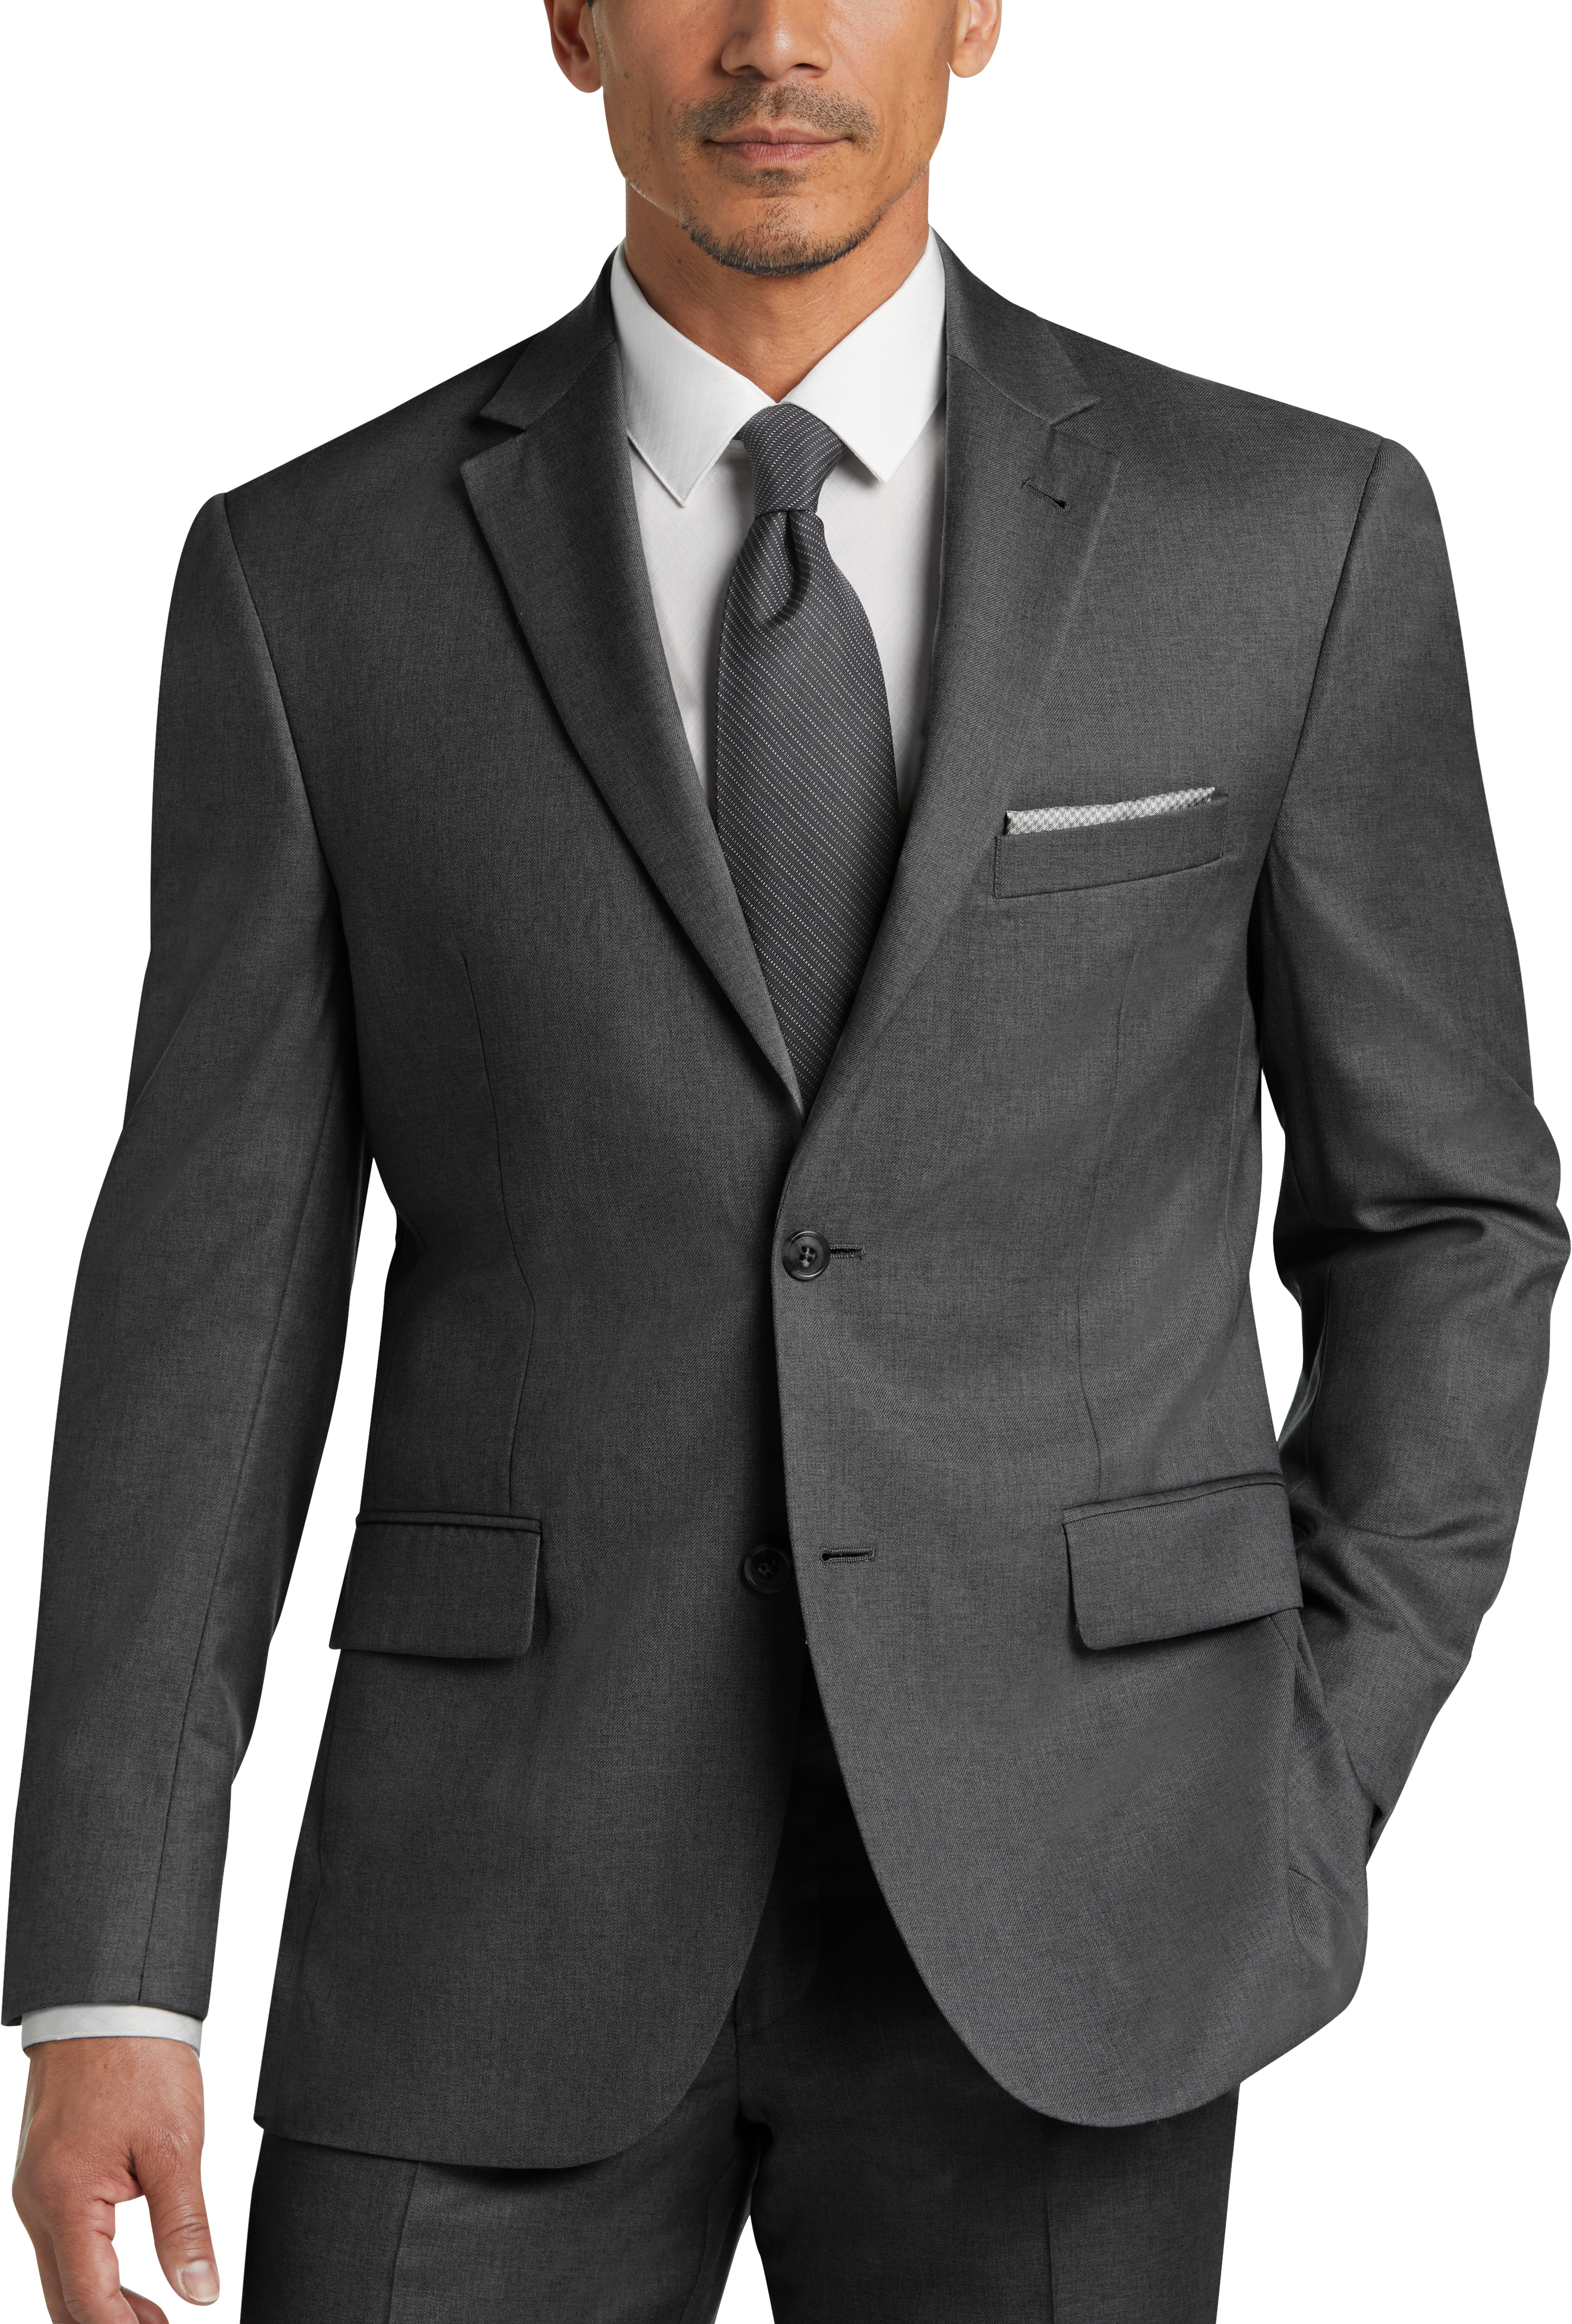 JOE Joseph Abboud Charcoal Gray Modern Fit Suit - Men's Sale | Men's ...